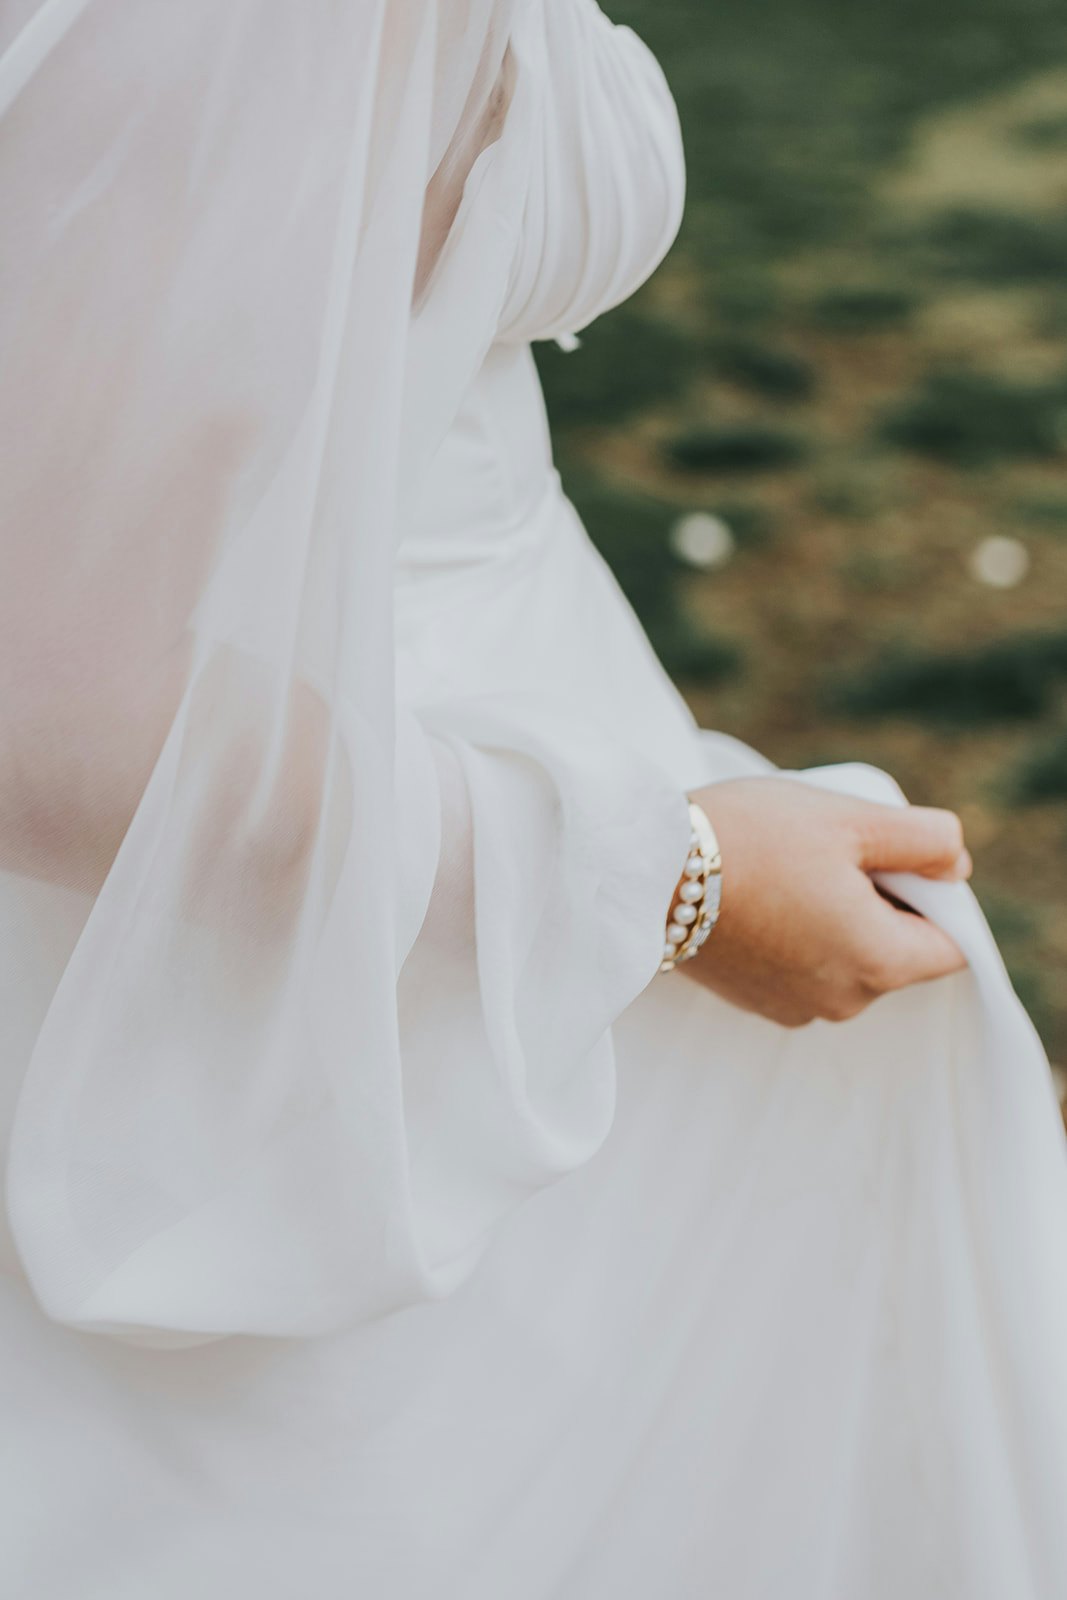 Bride wearing a pearl bracelet